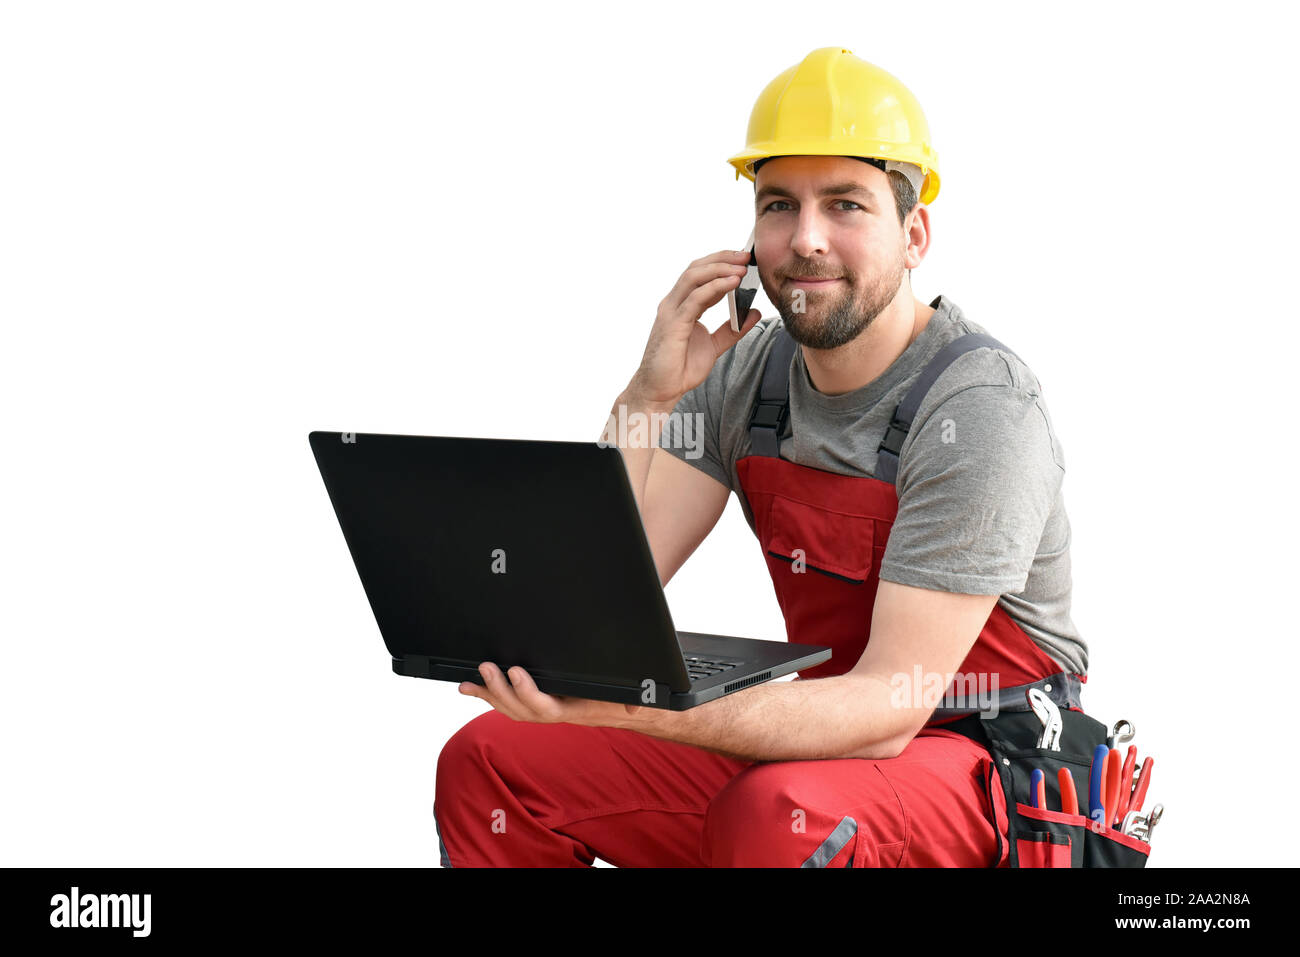 Customer service com Handwerker - Arbeitnehmer mit Telefon und Notebook auf der Baustelle / weißer Hintergrund Stockfoto